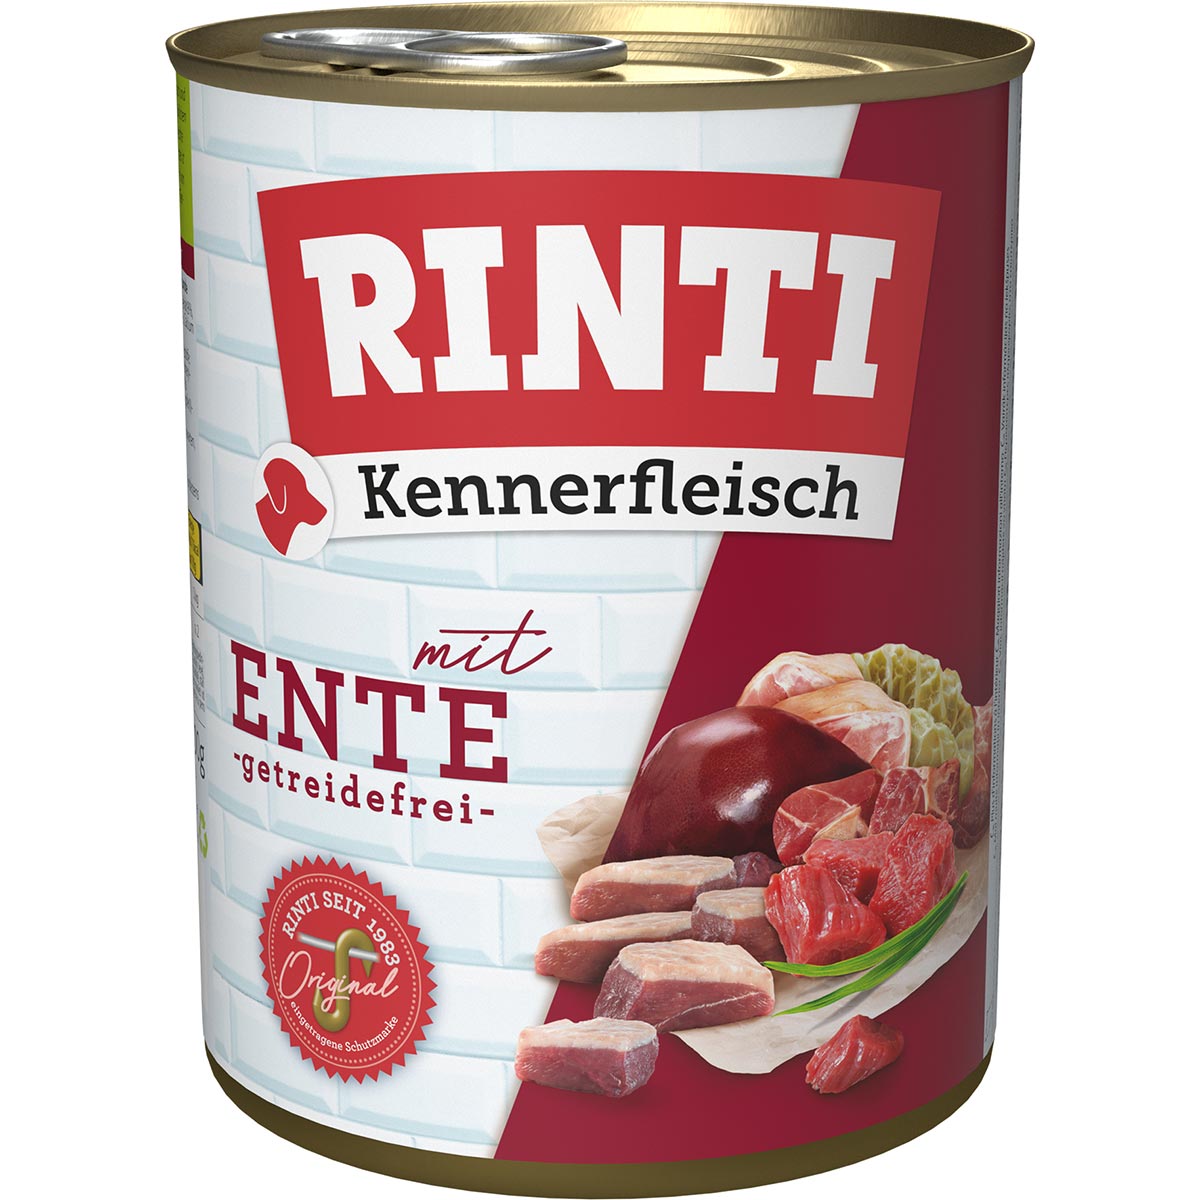 Rinti Kennerfleisch Ente 12x800g von Rinti